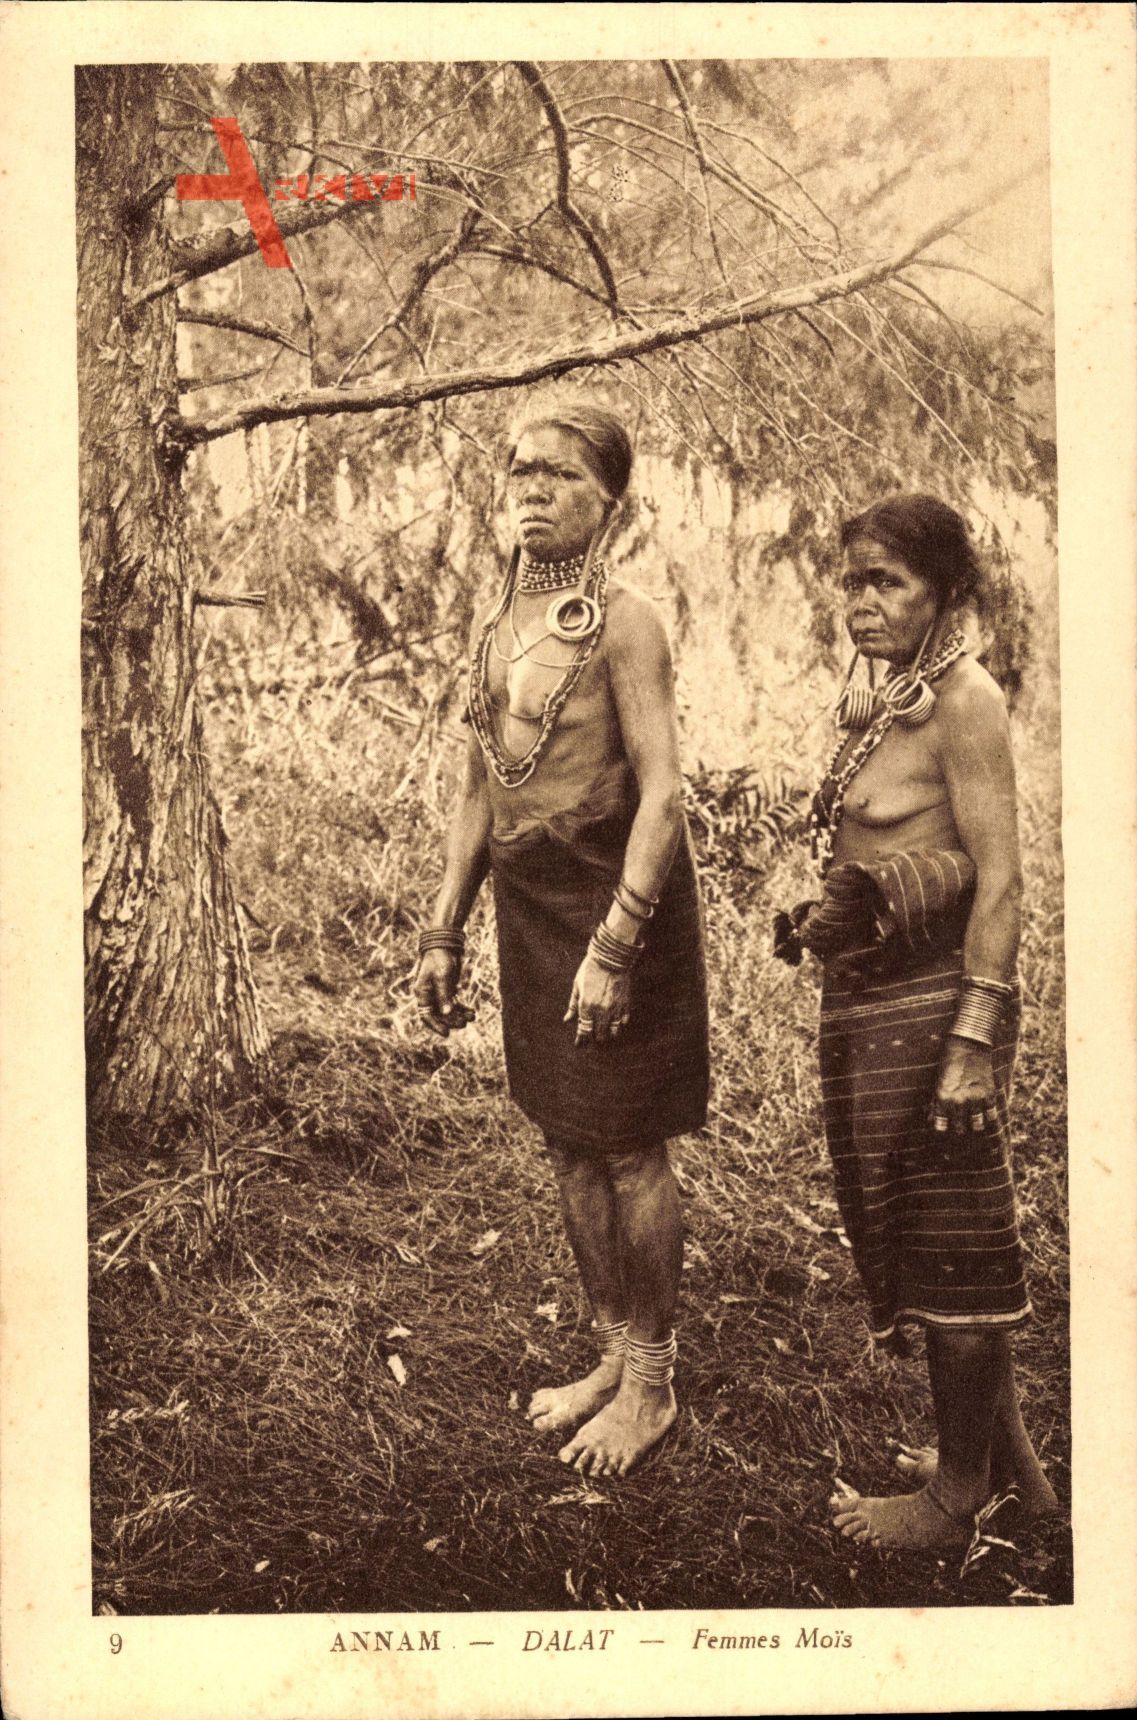 Annam Dalat Vietnam, Femmes Mois, zwei ältere Eingeborenenfrauen